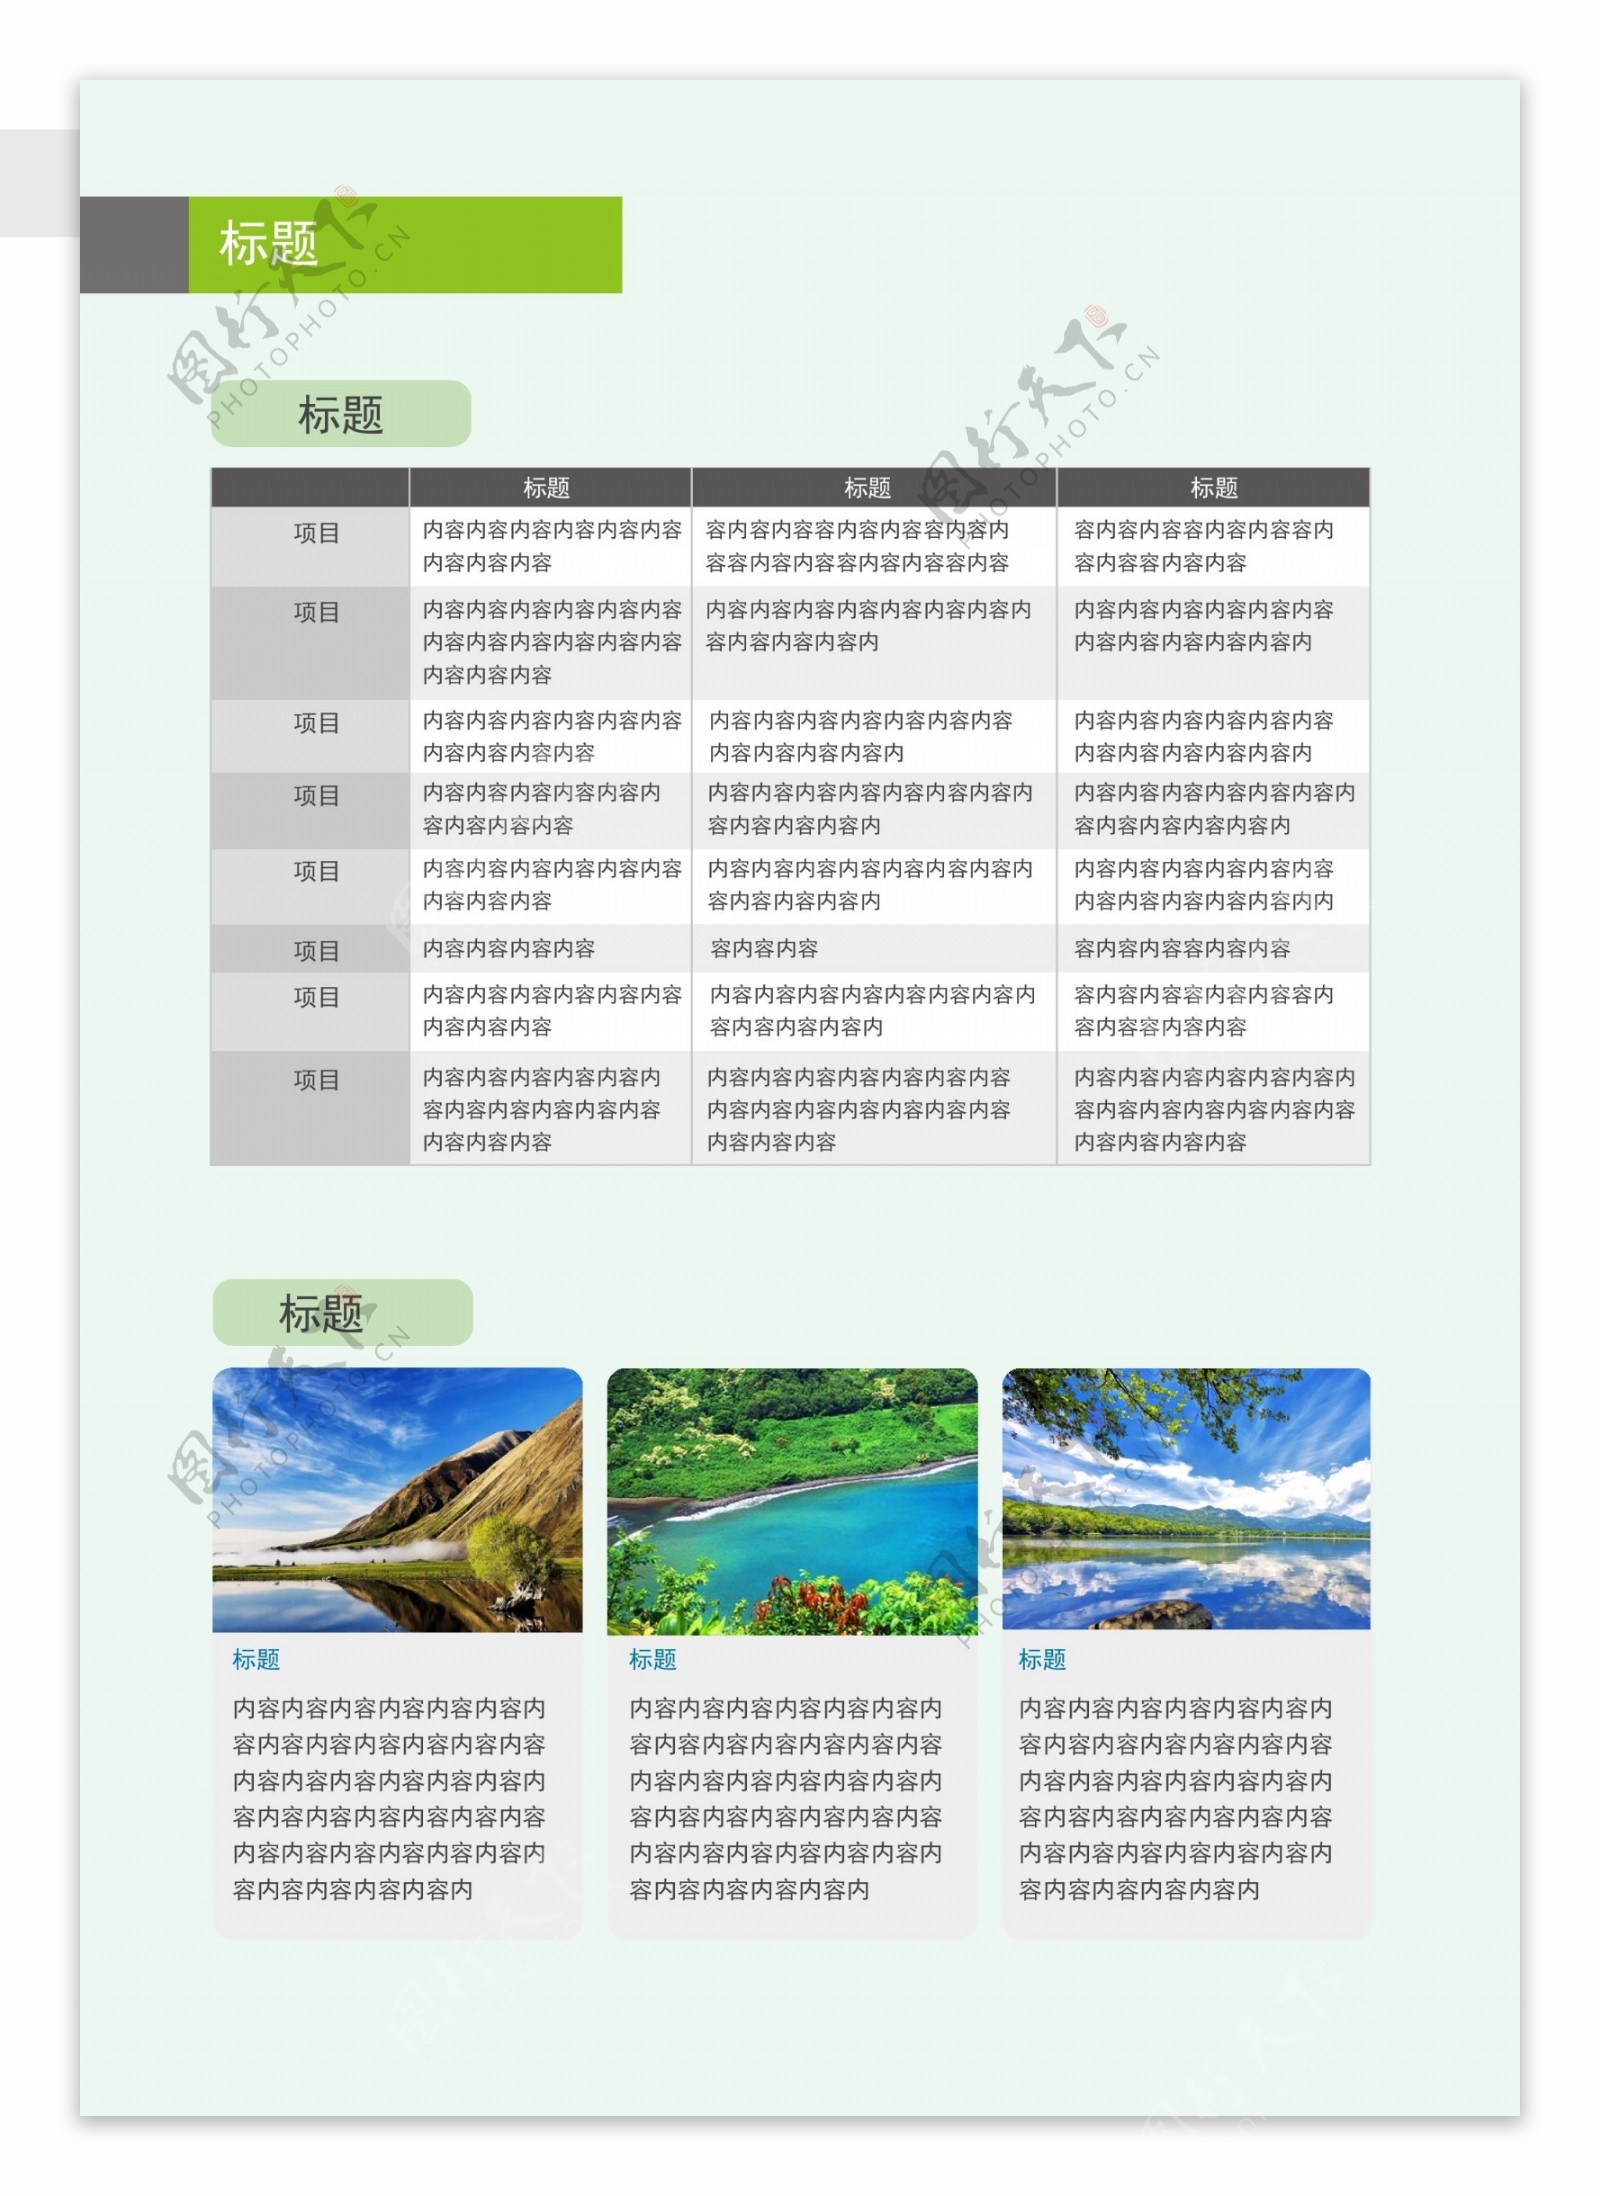 绿色清新简约画册内页设计图文版式设计